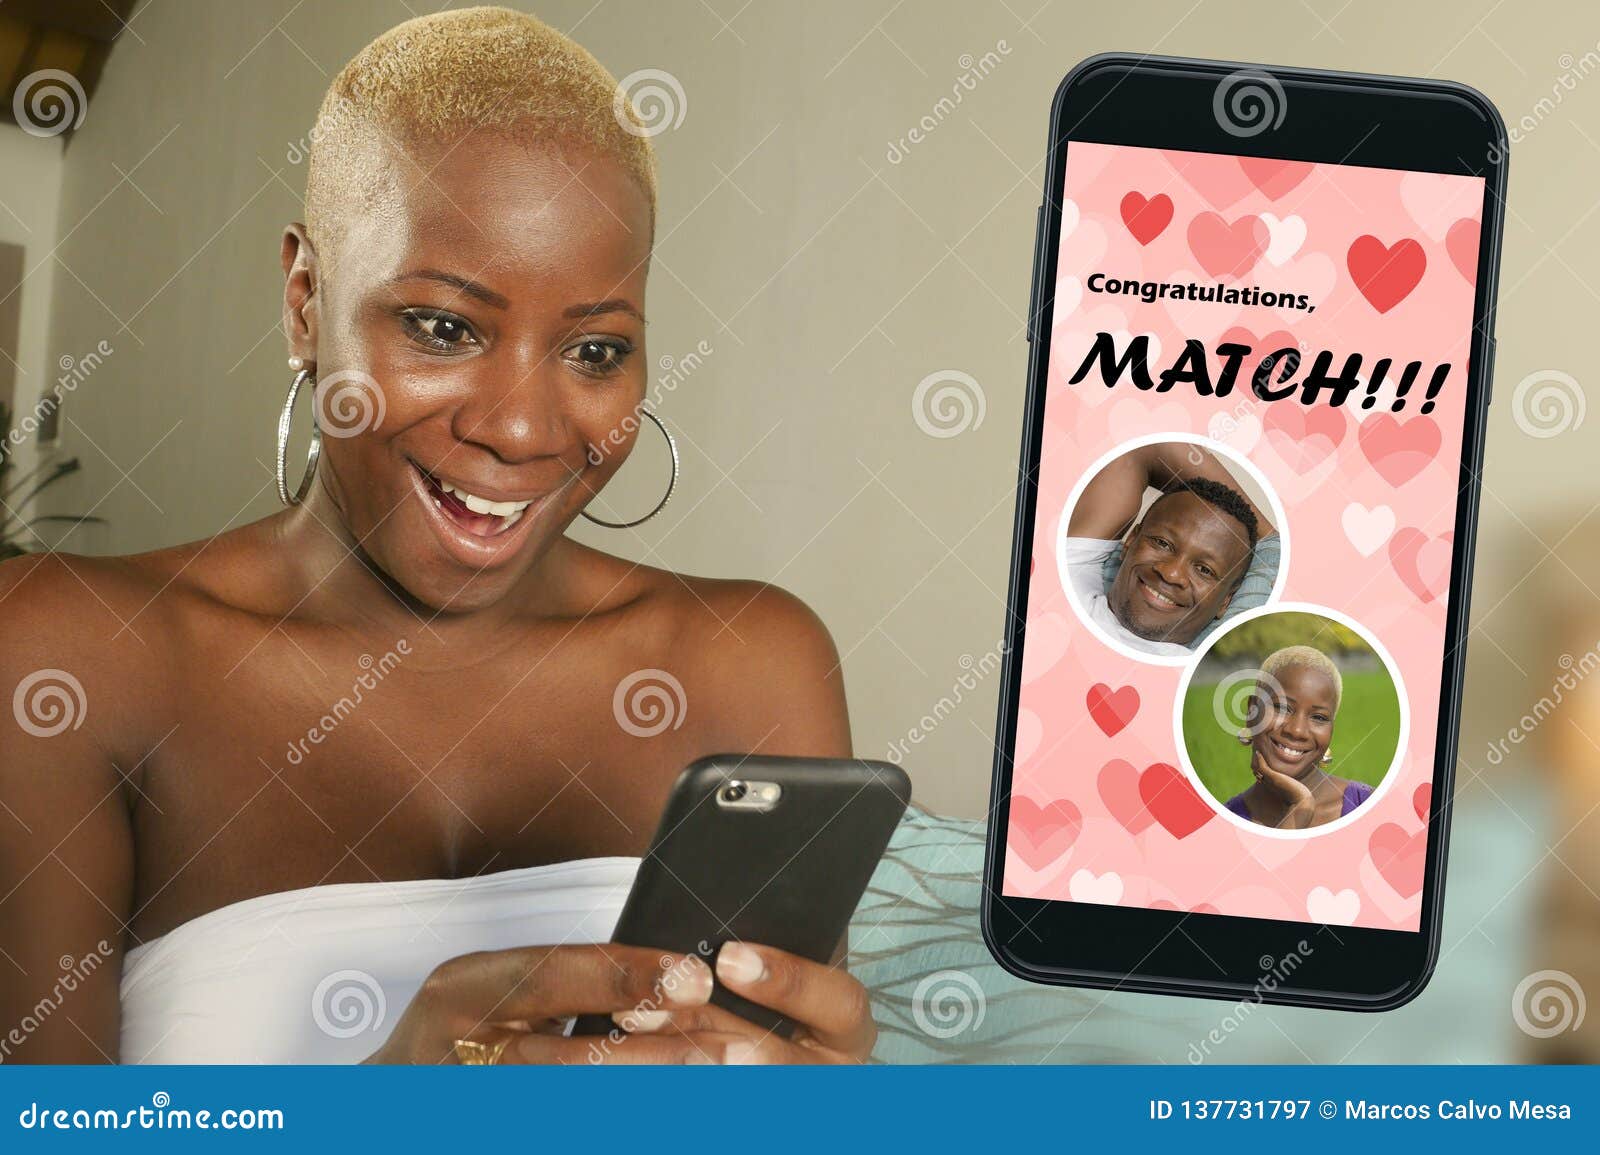 black online dating